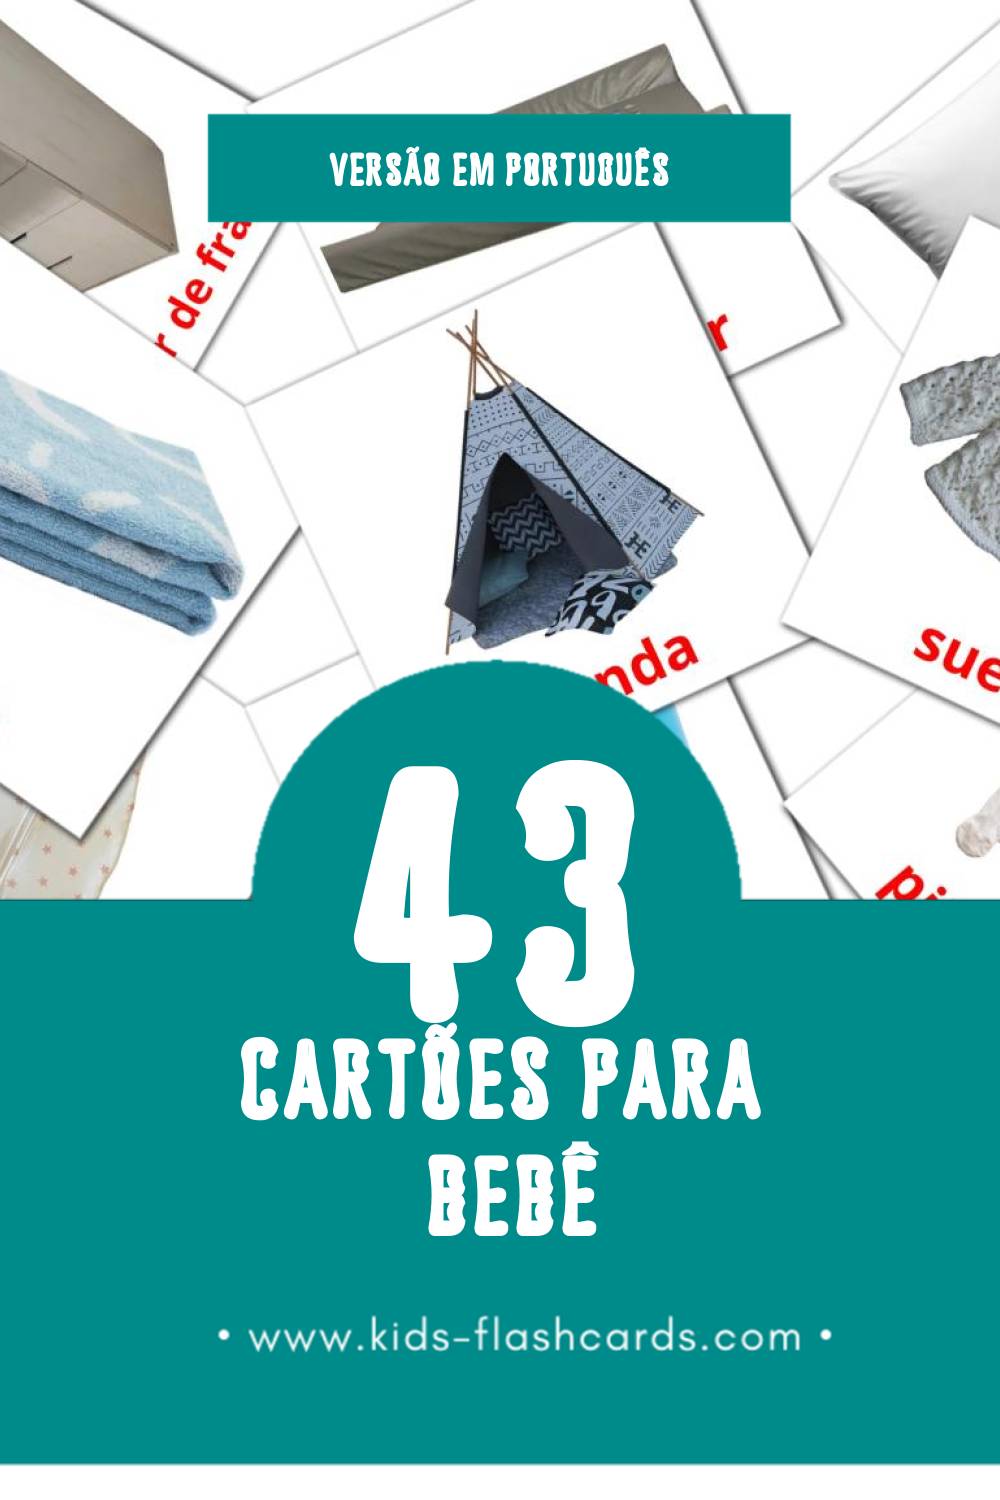 Flashcards de Bebê Visuais para Toddlers (43 cartões em Português)